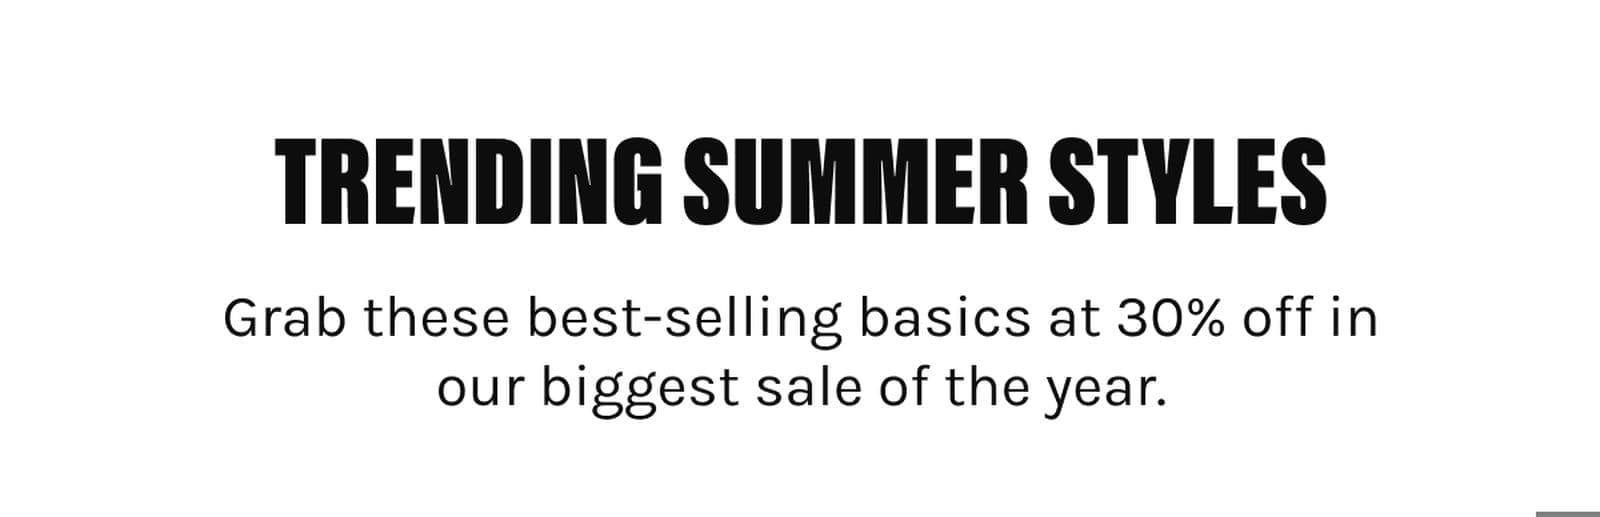 Trending Summer Styles Sale - Best Sellers